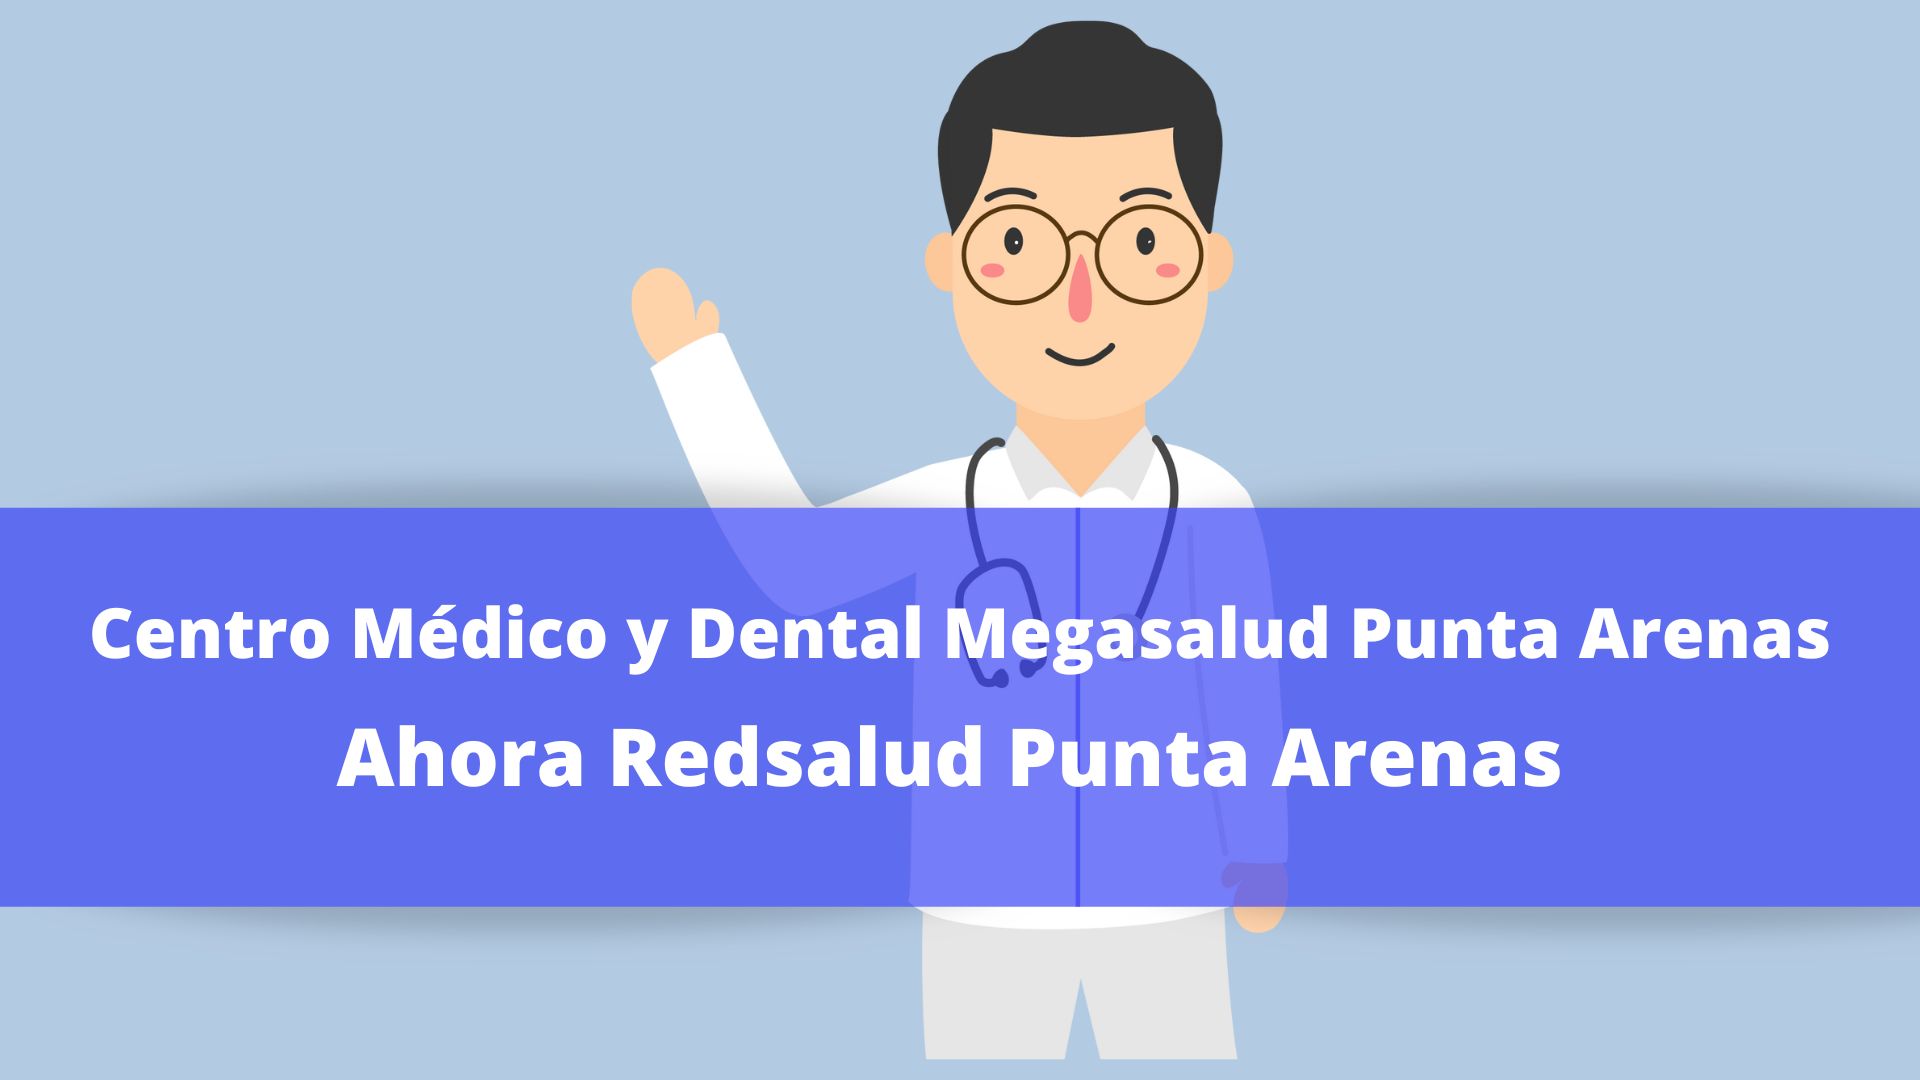 Centro Médico y Dental RedSalud Punta Arenas